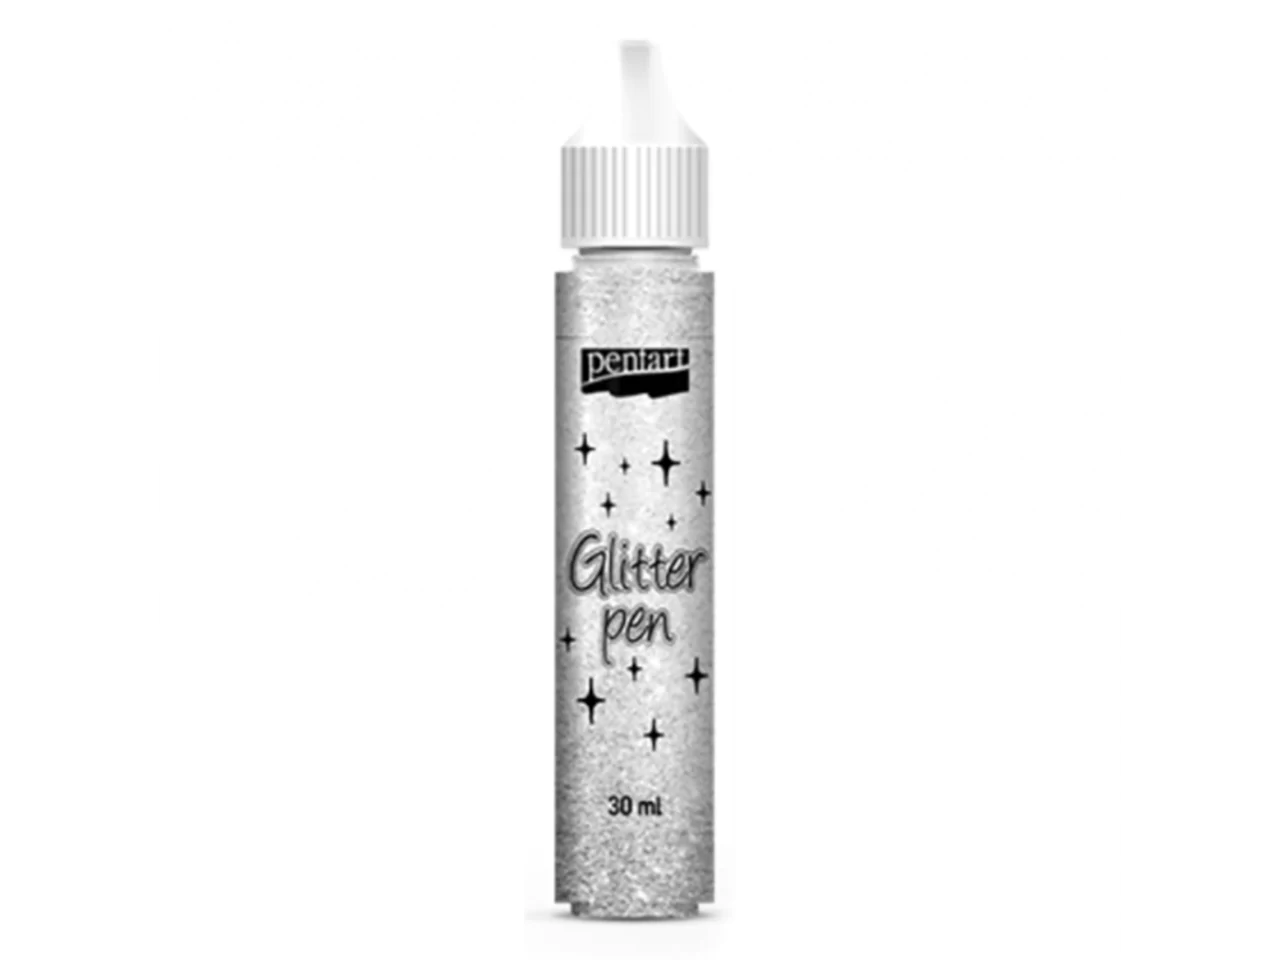 Pentart Glitter Pens 30 ml